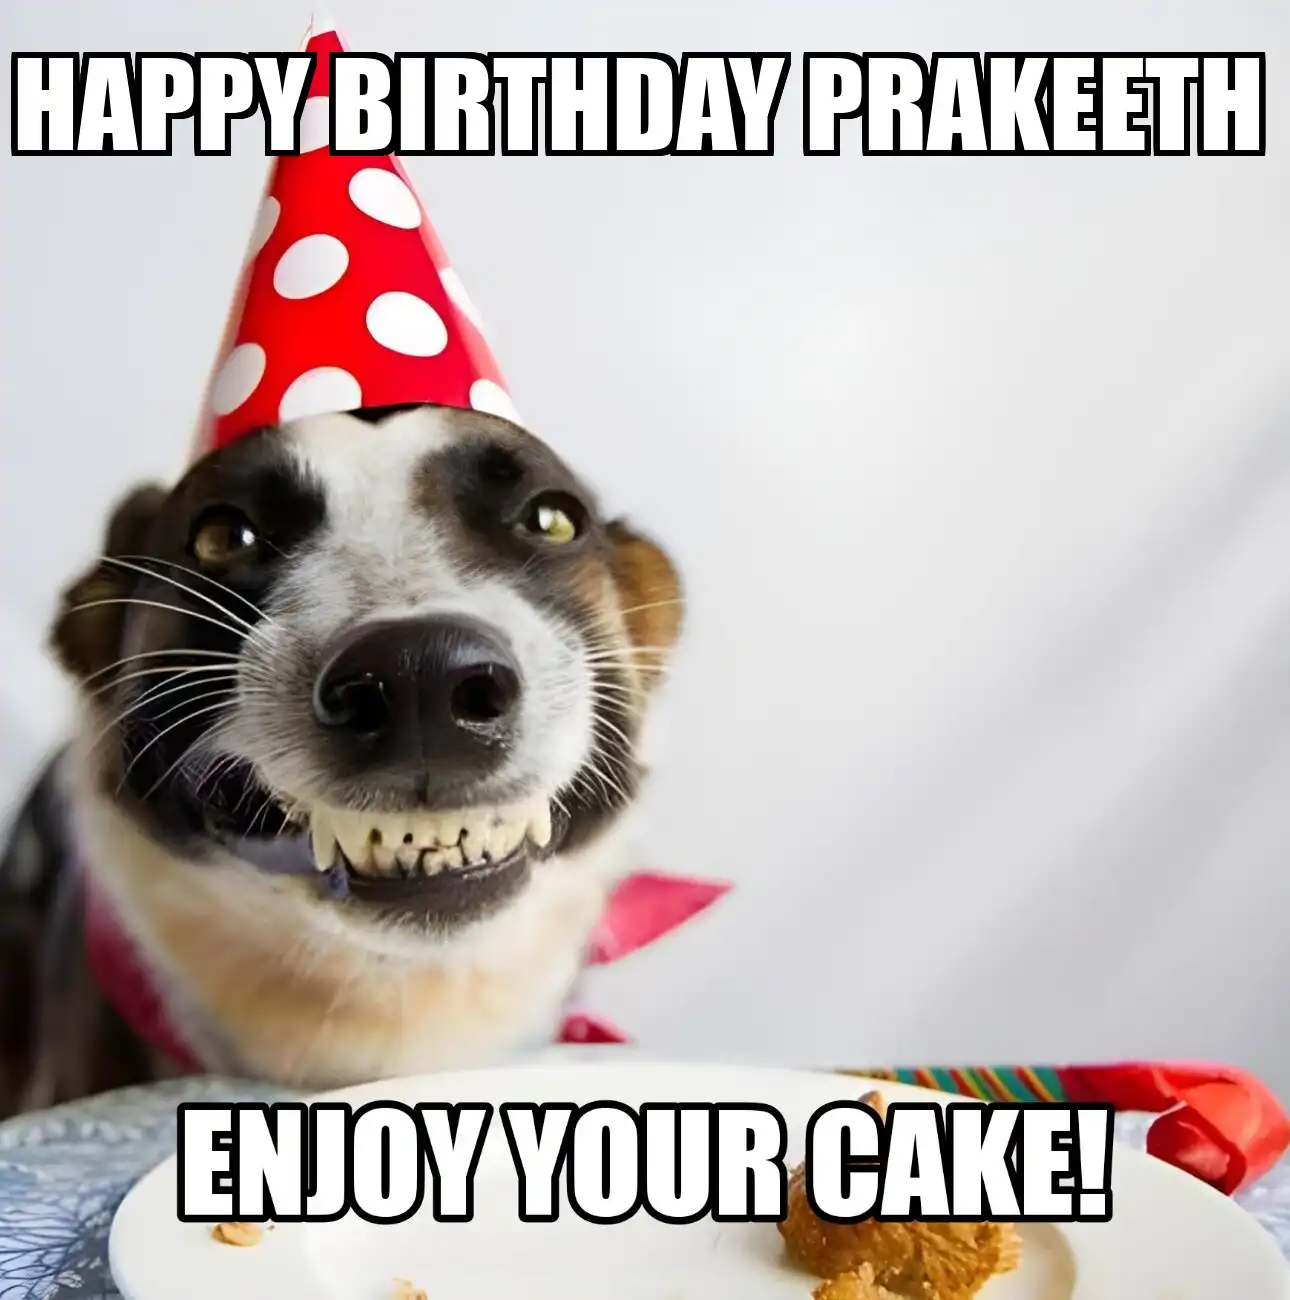 Happy Birthday Prakeeth Enjoy Your Cake Dog Meme